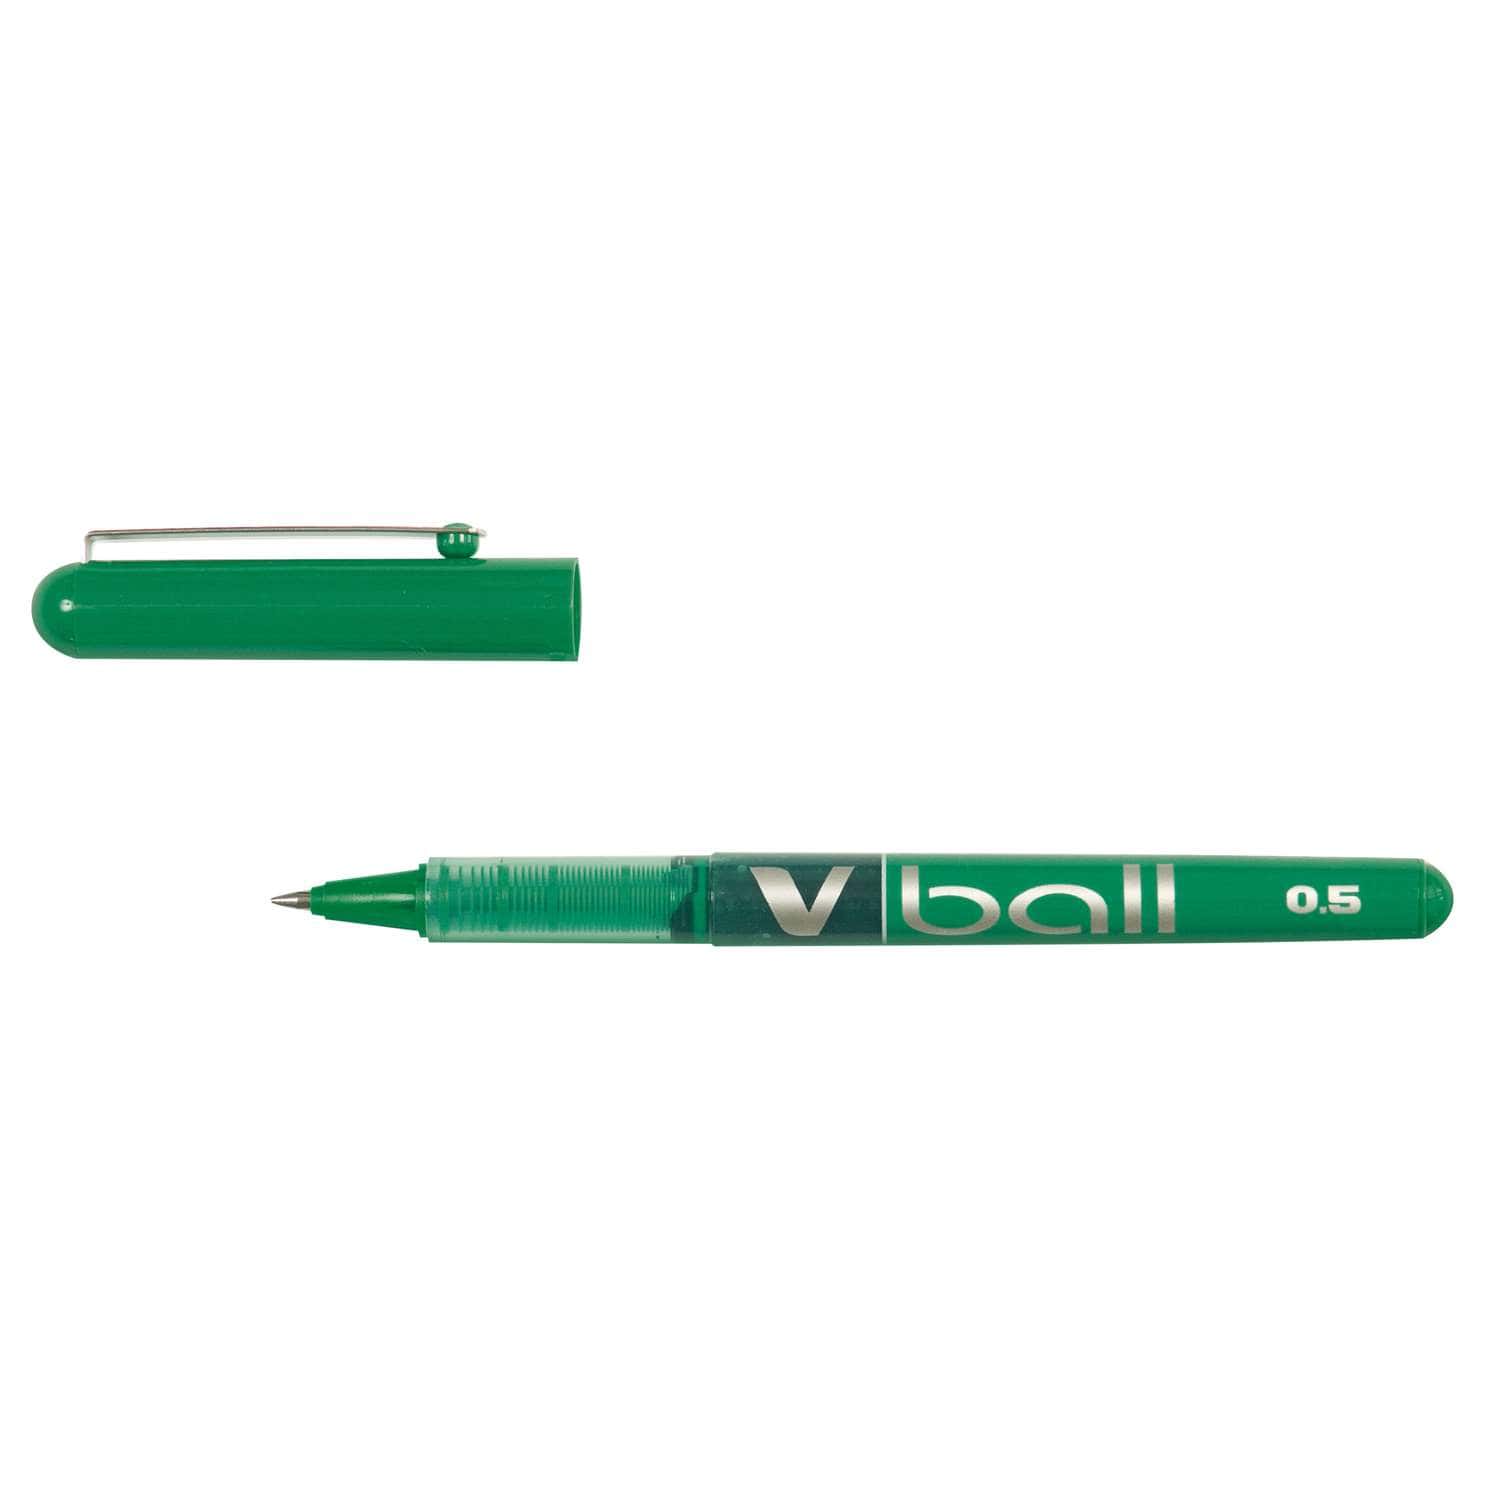 Stylo roller Pilot Pen V-Ball 07